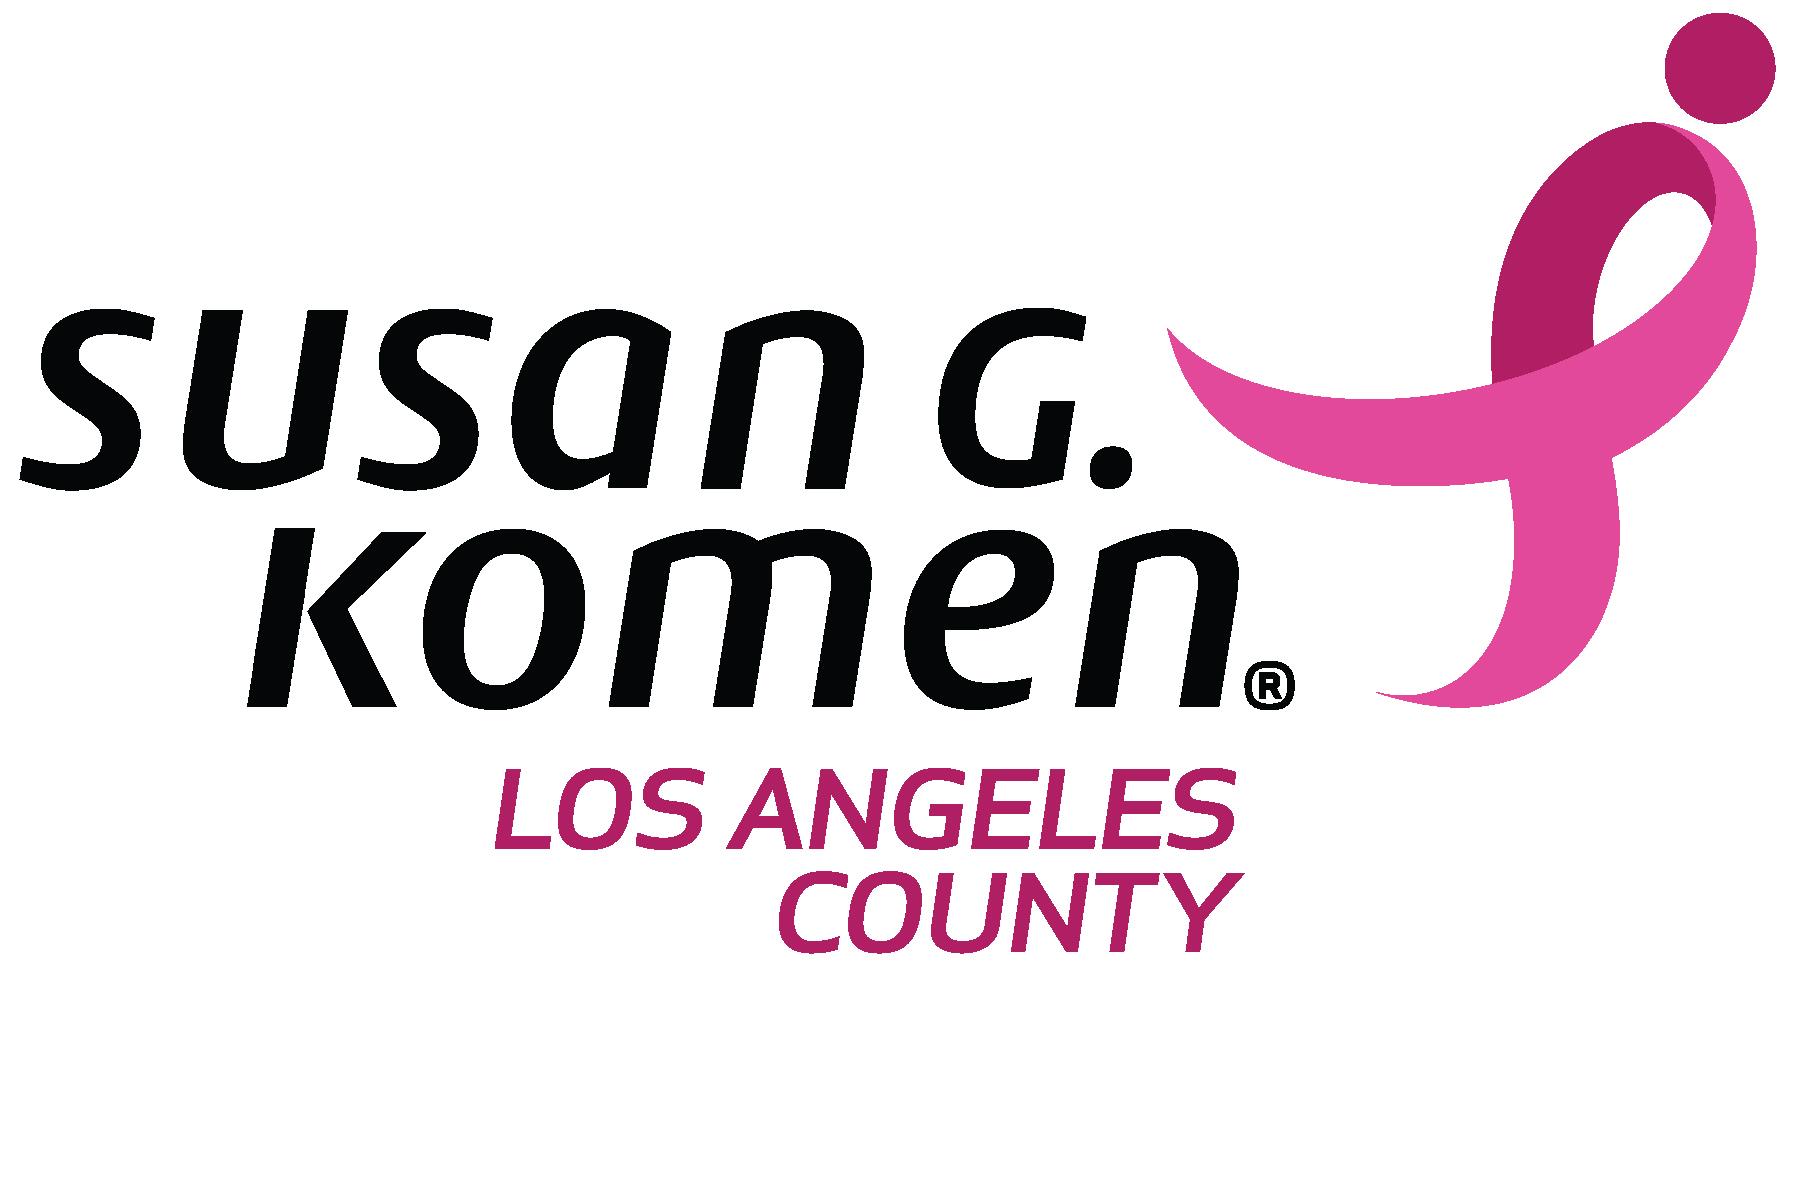 Susan G. Komen Los Angeles